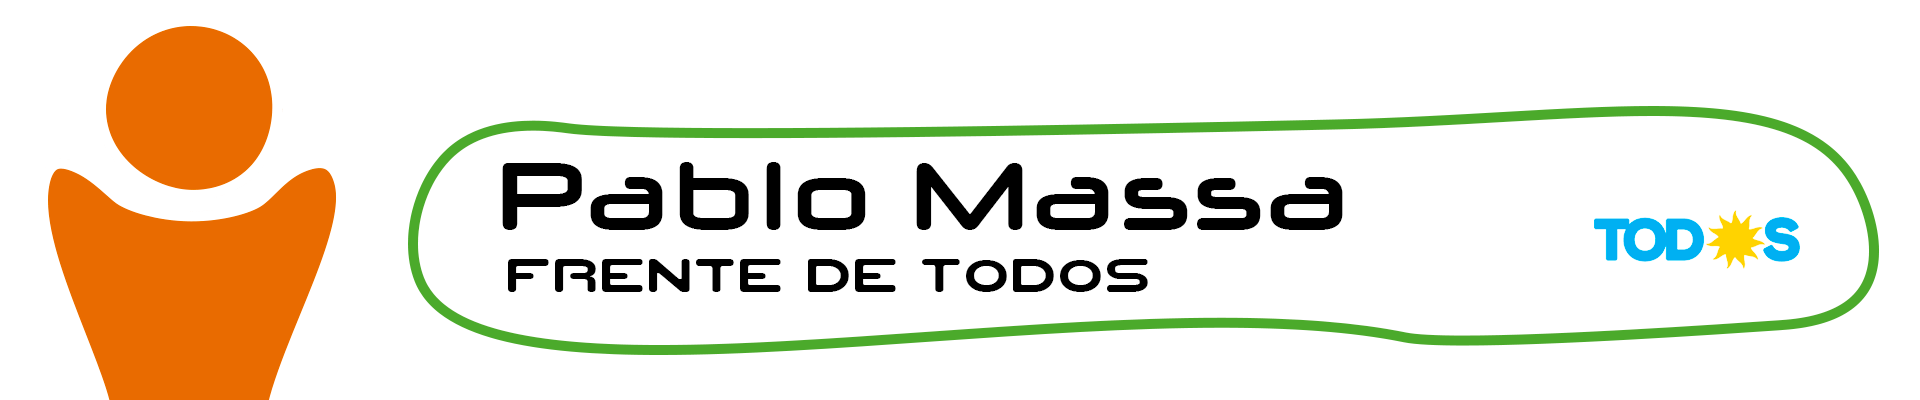 Pablo Massa